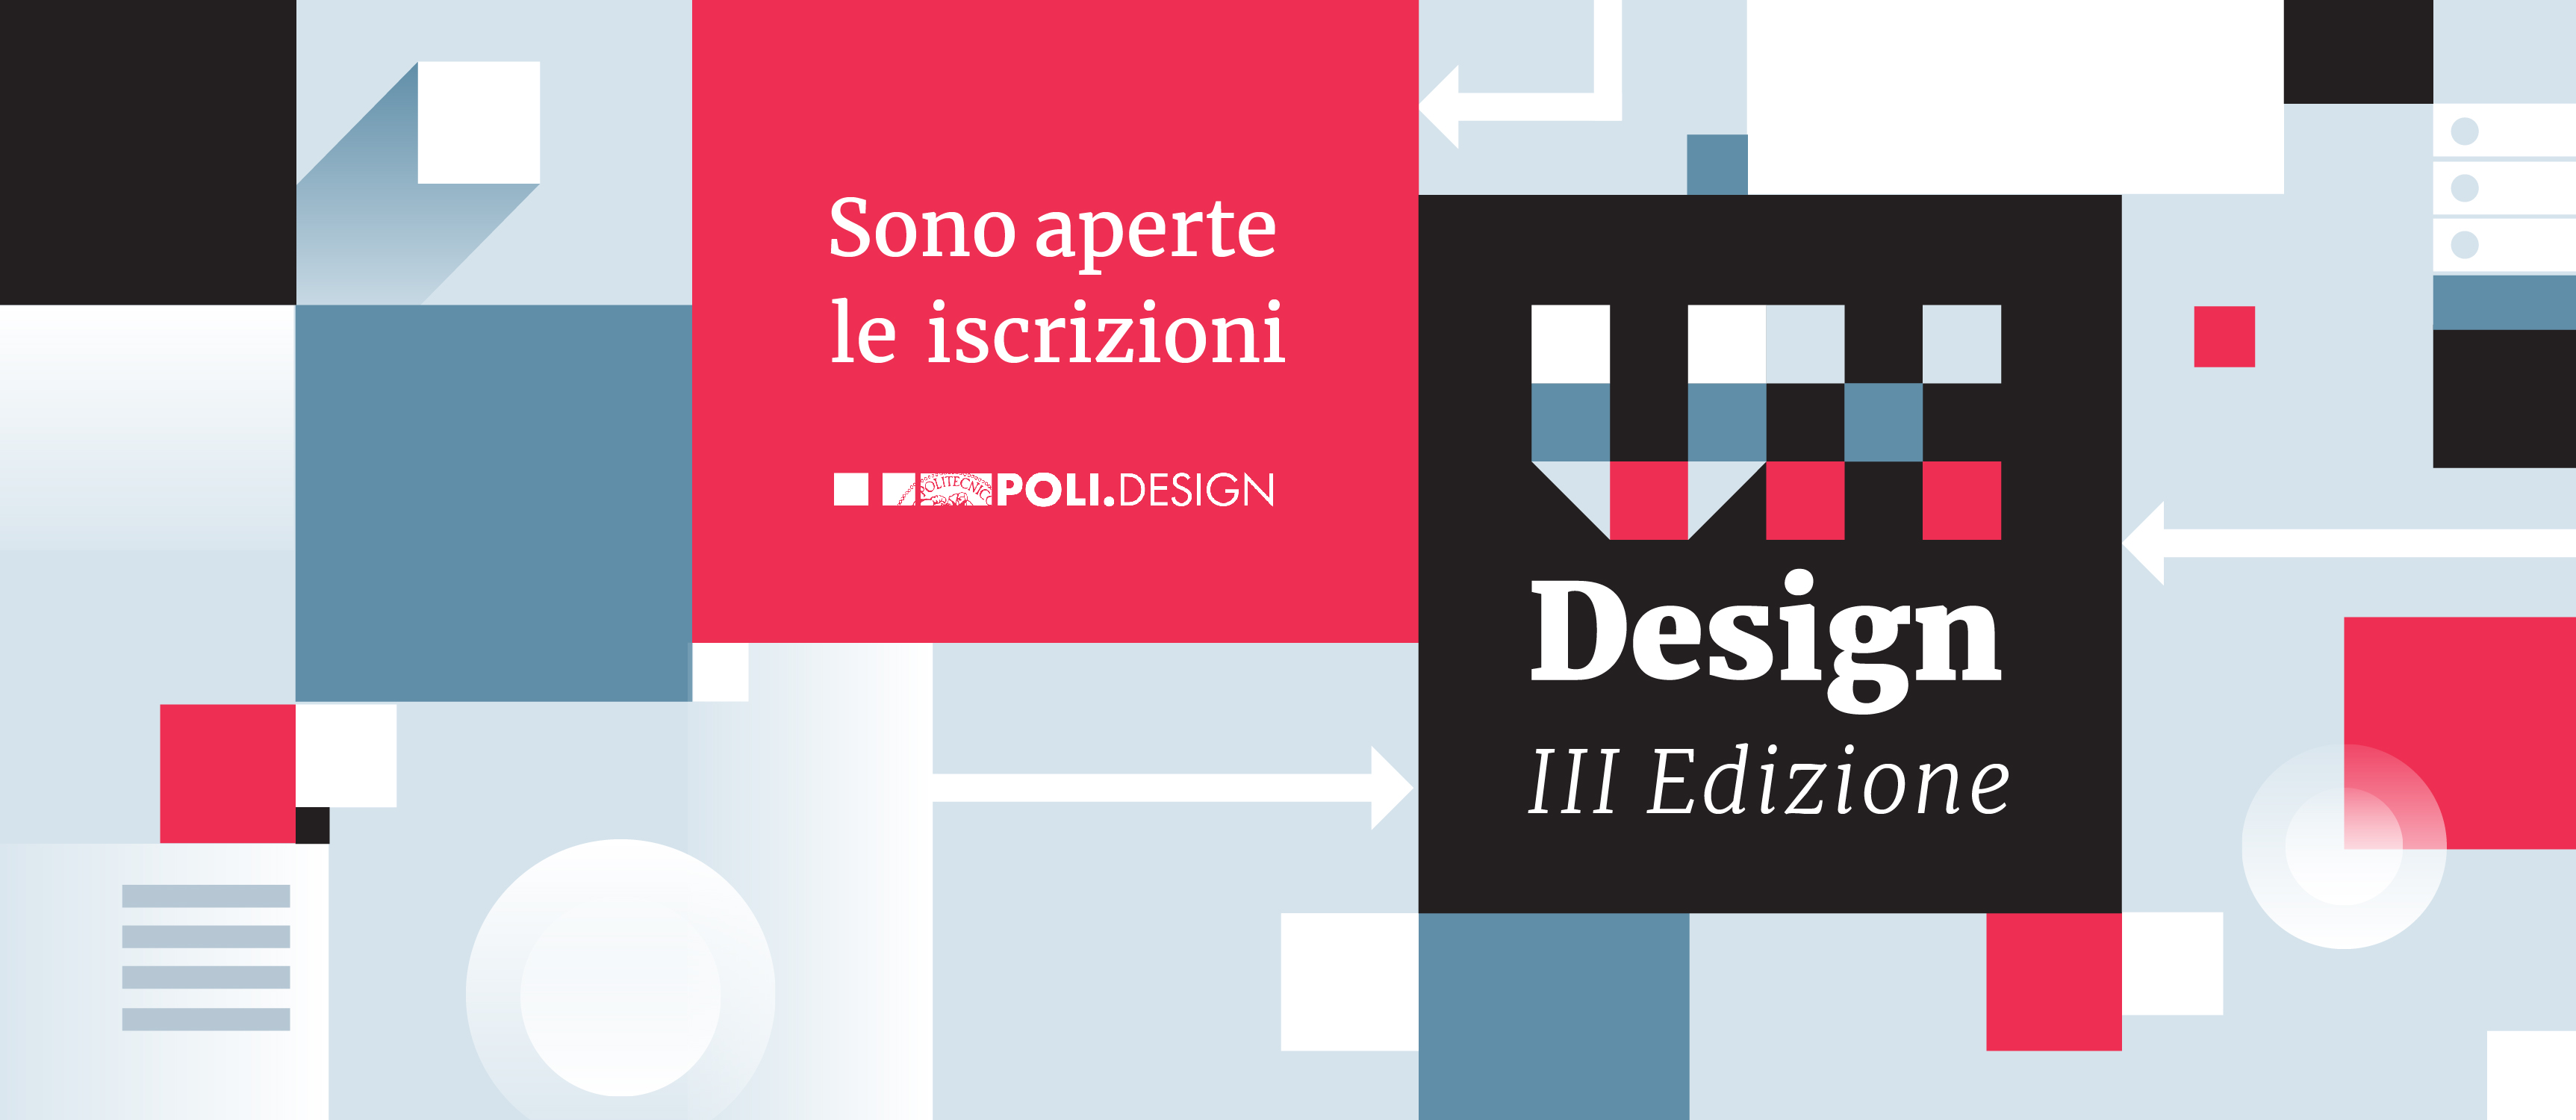 Corso di Alta Formazione in User Experience Design – Aperte le iscrizioni alla 3° edizione!